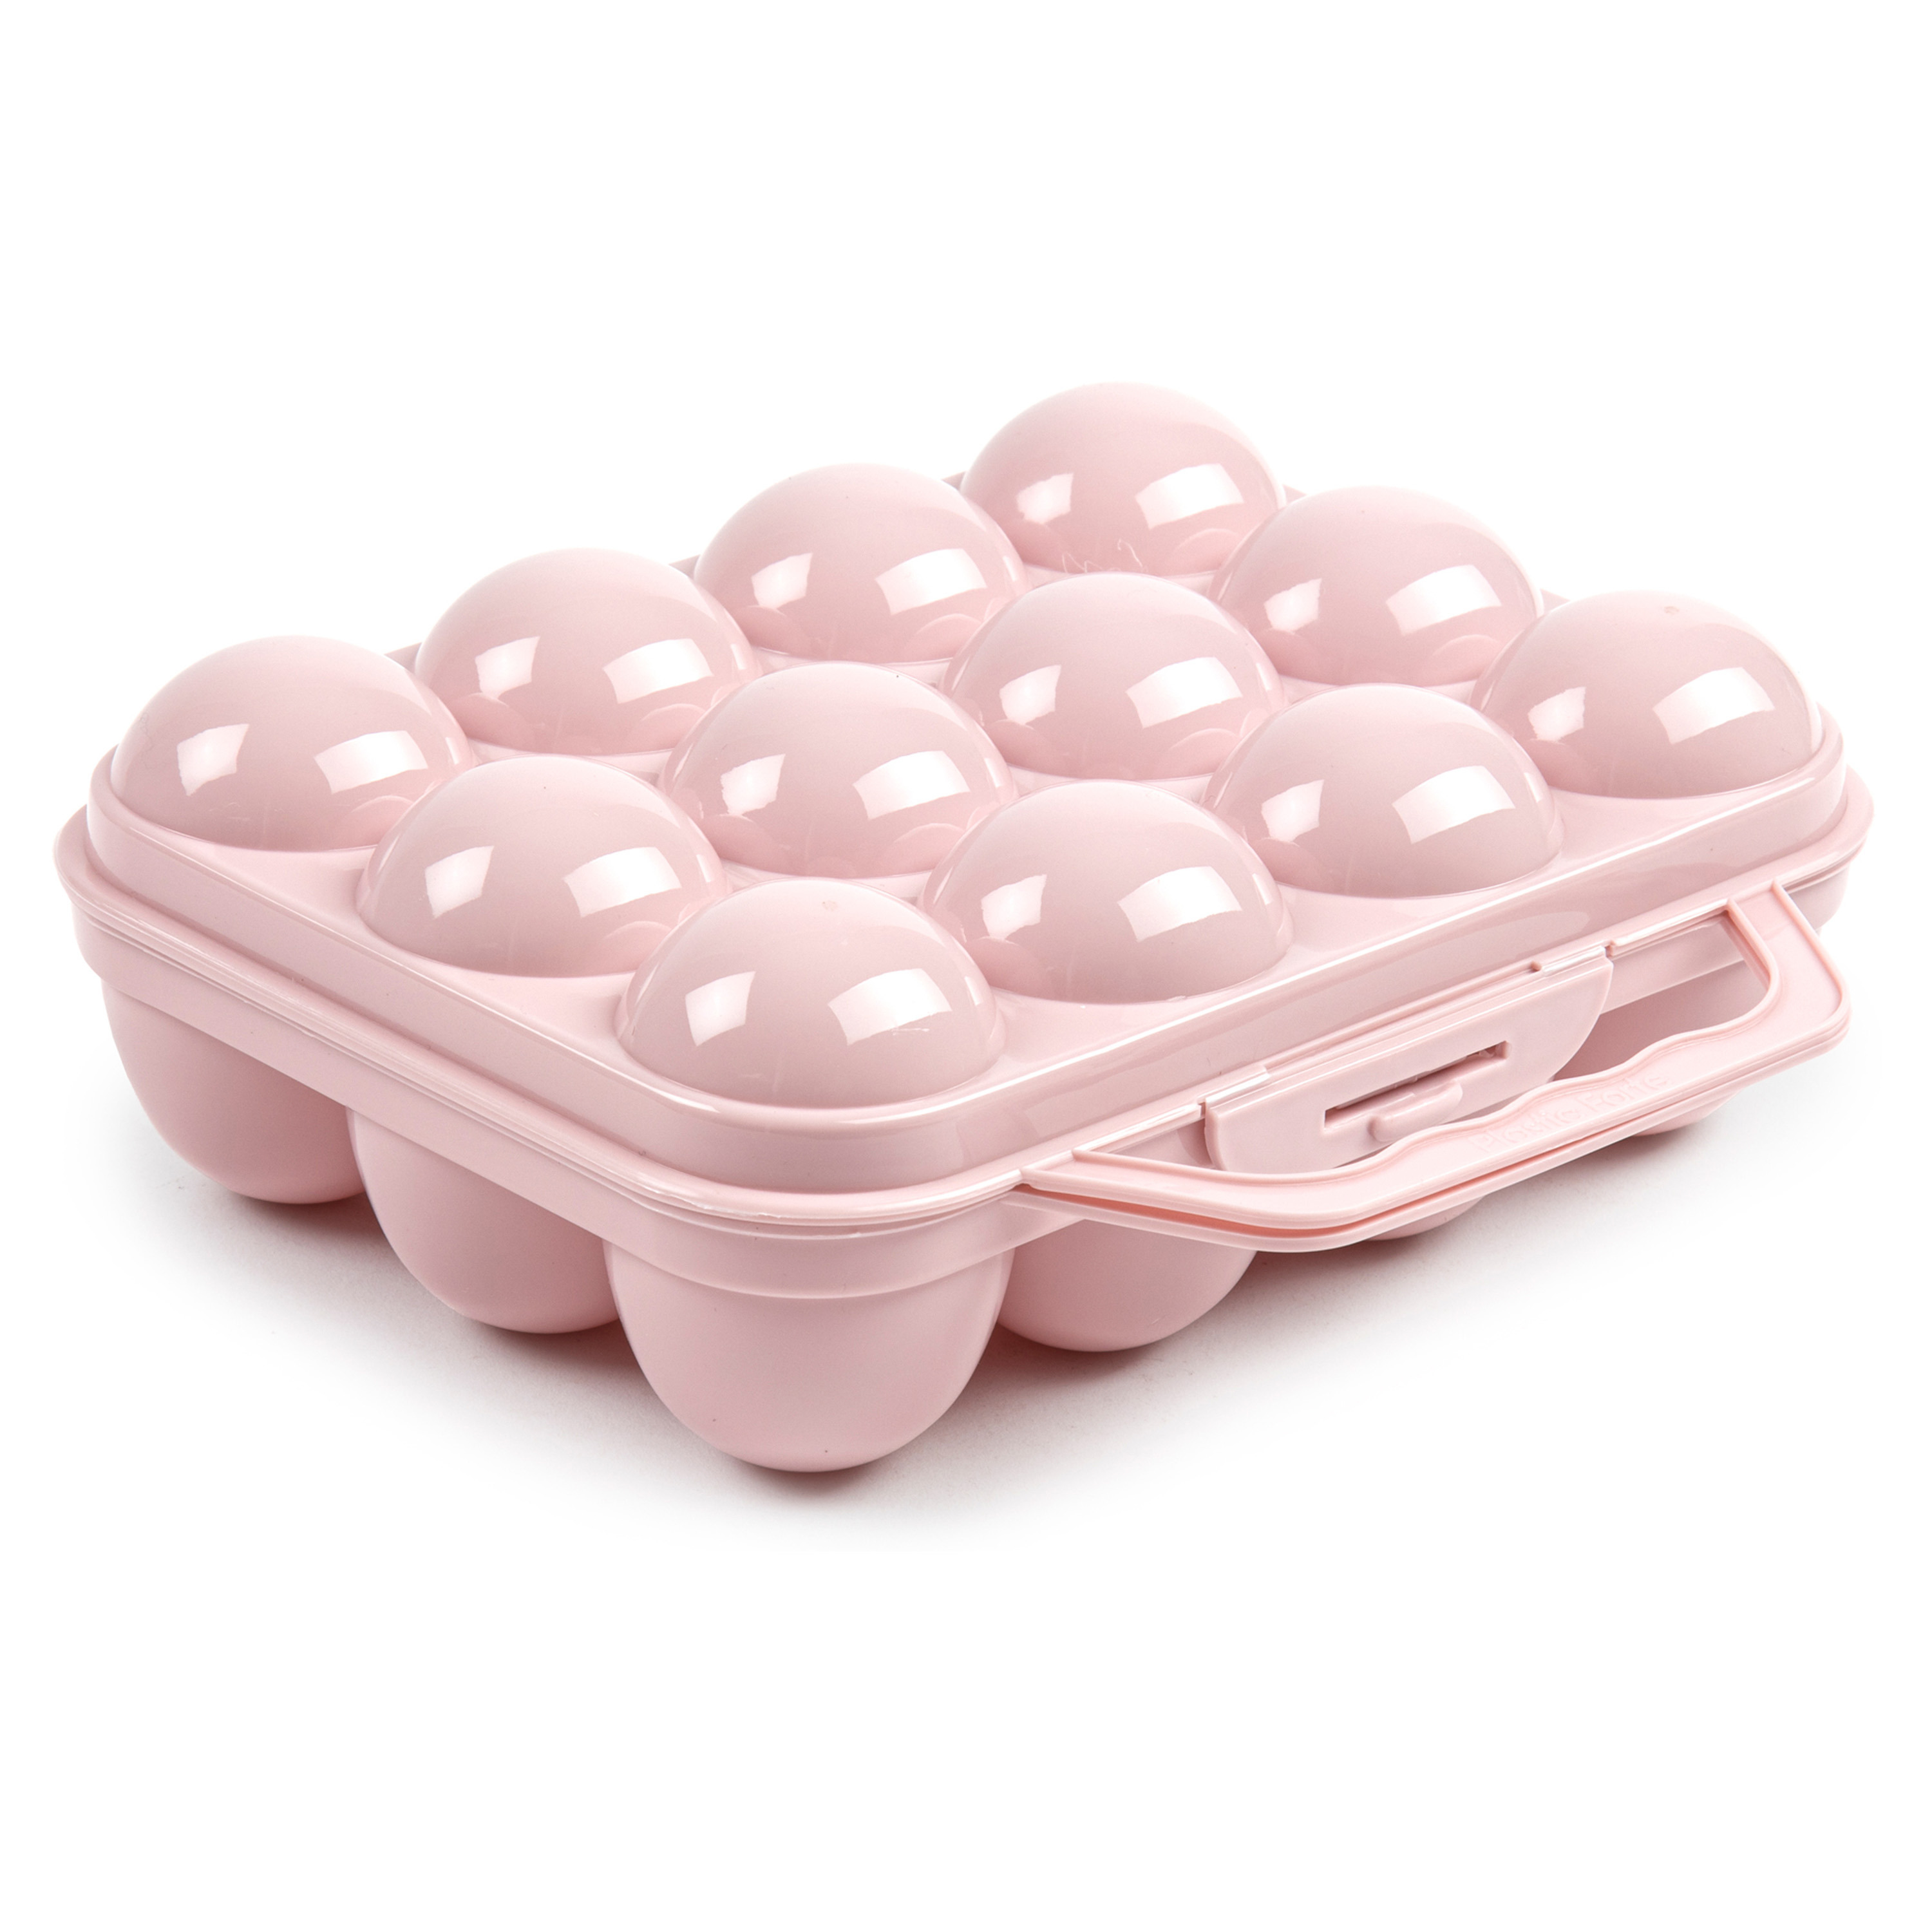 Eierdoos koelkast organizer eierhouder 12 eieren licht roze kunststof 20 x 18,5 cm